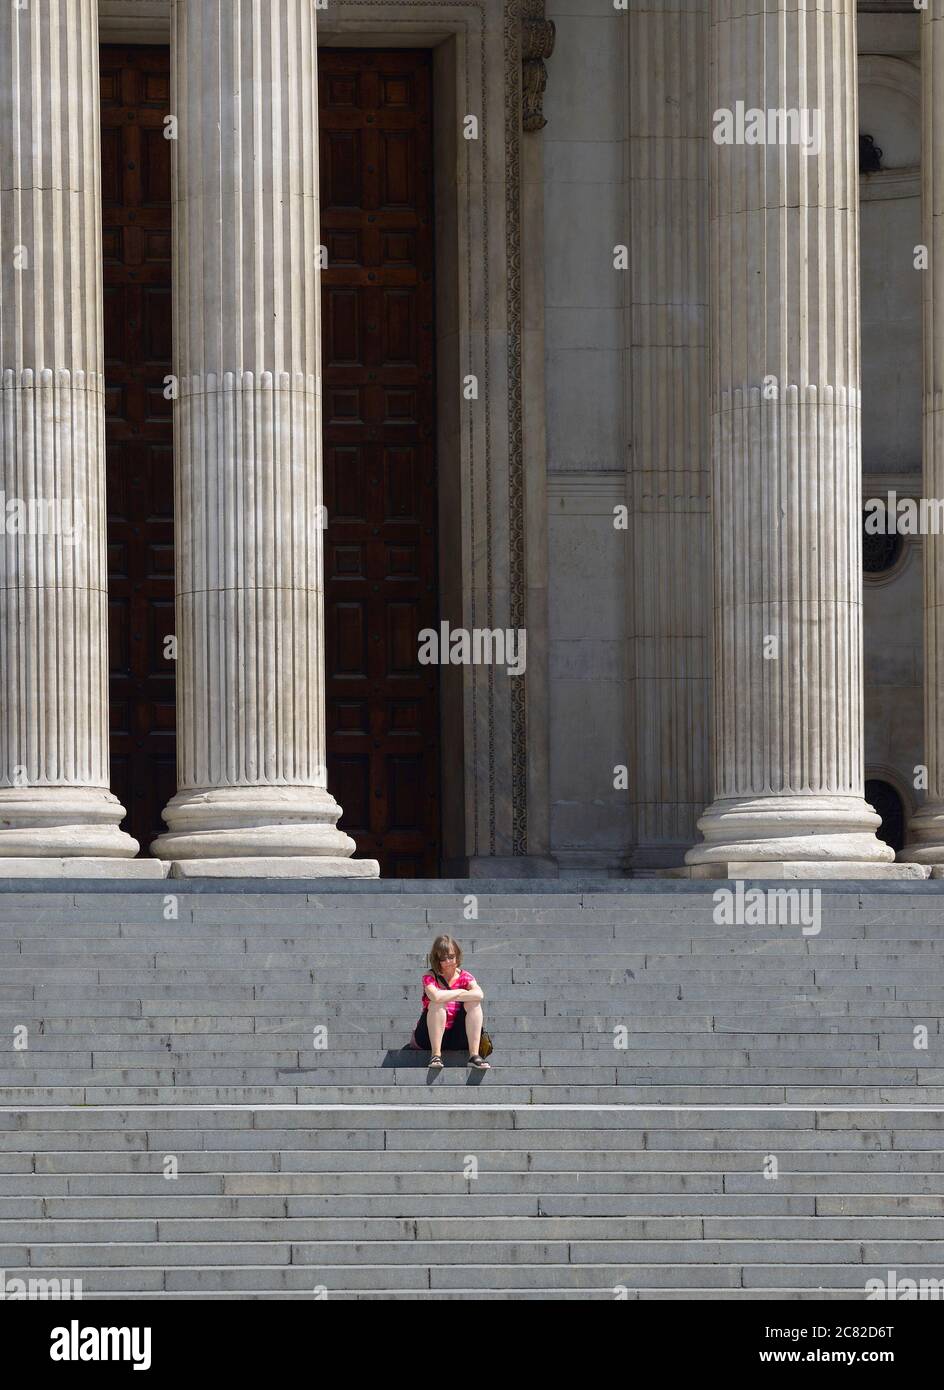 Londra, Inghilterra, Regno Unito. Donna seduta da sola sui gradini della Cattedrale di San Paolo durante l'epidemia di COVID-19, luglio 2020 Foto Stock